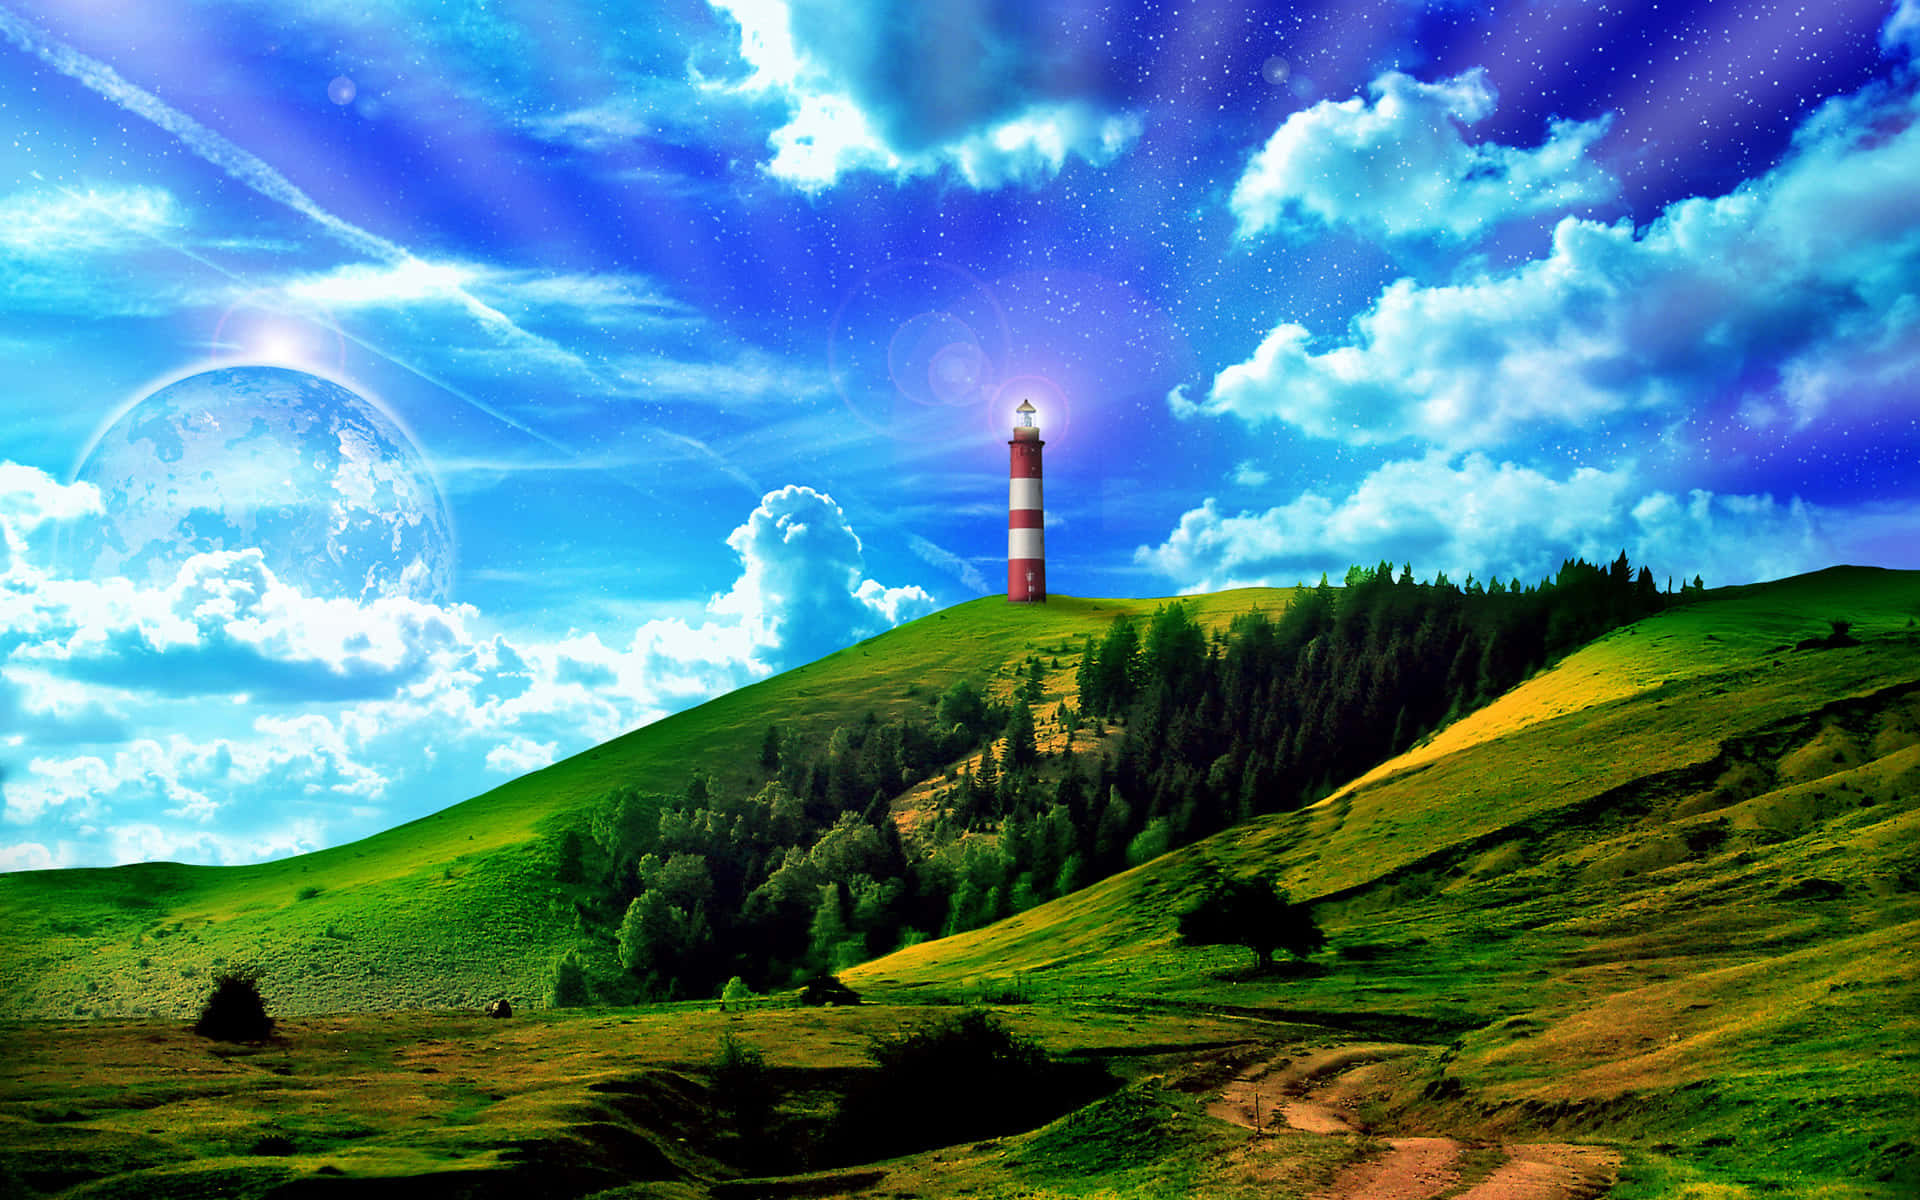 Lighthouse Fantasy Art Editing Background